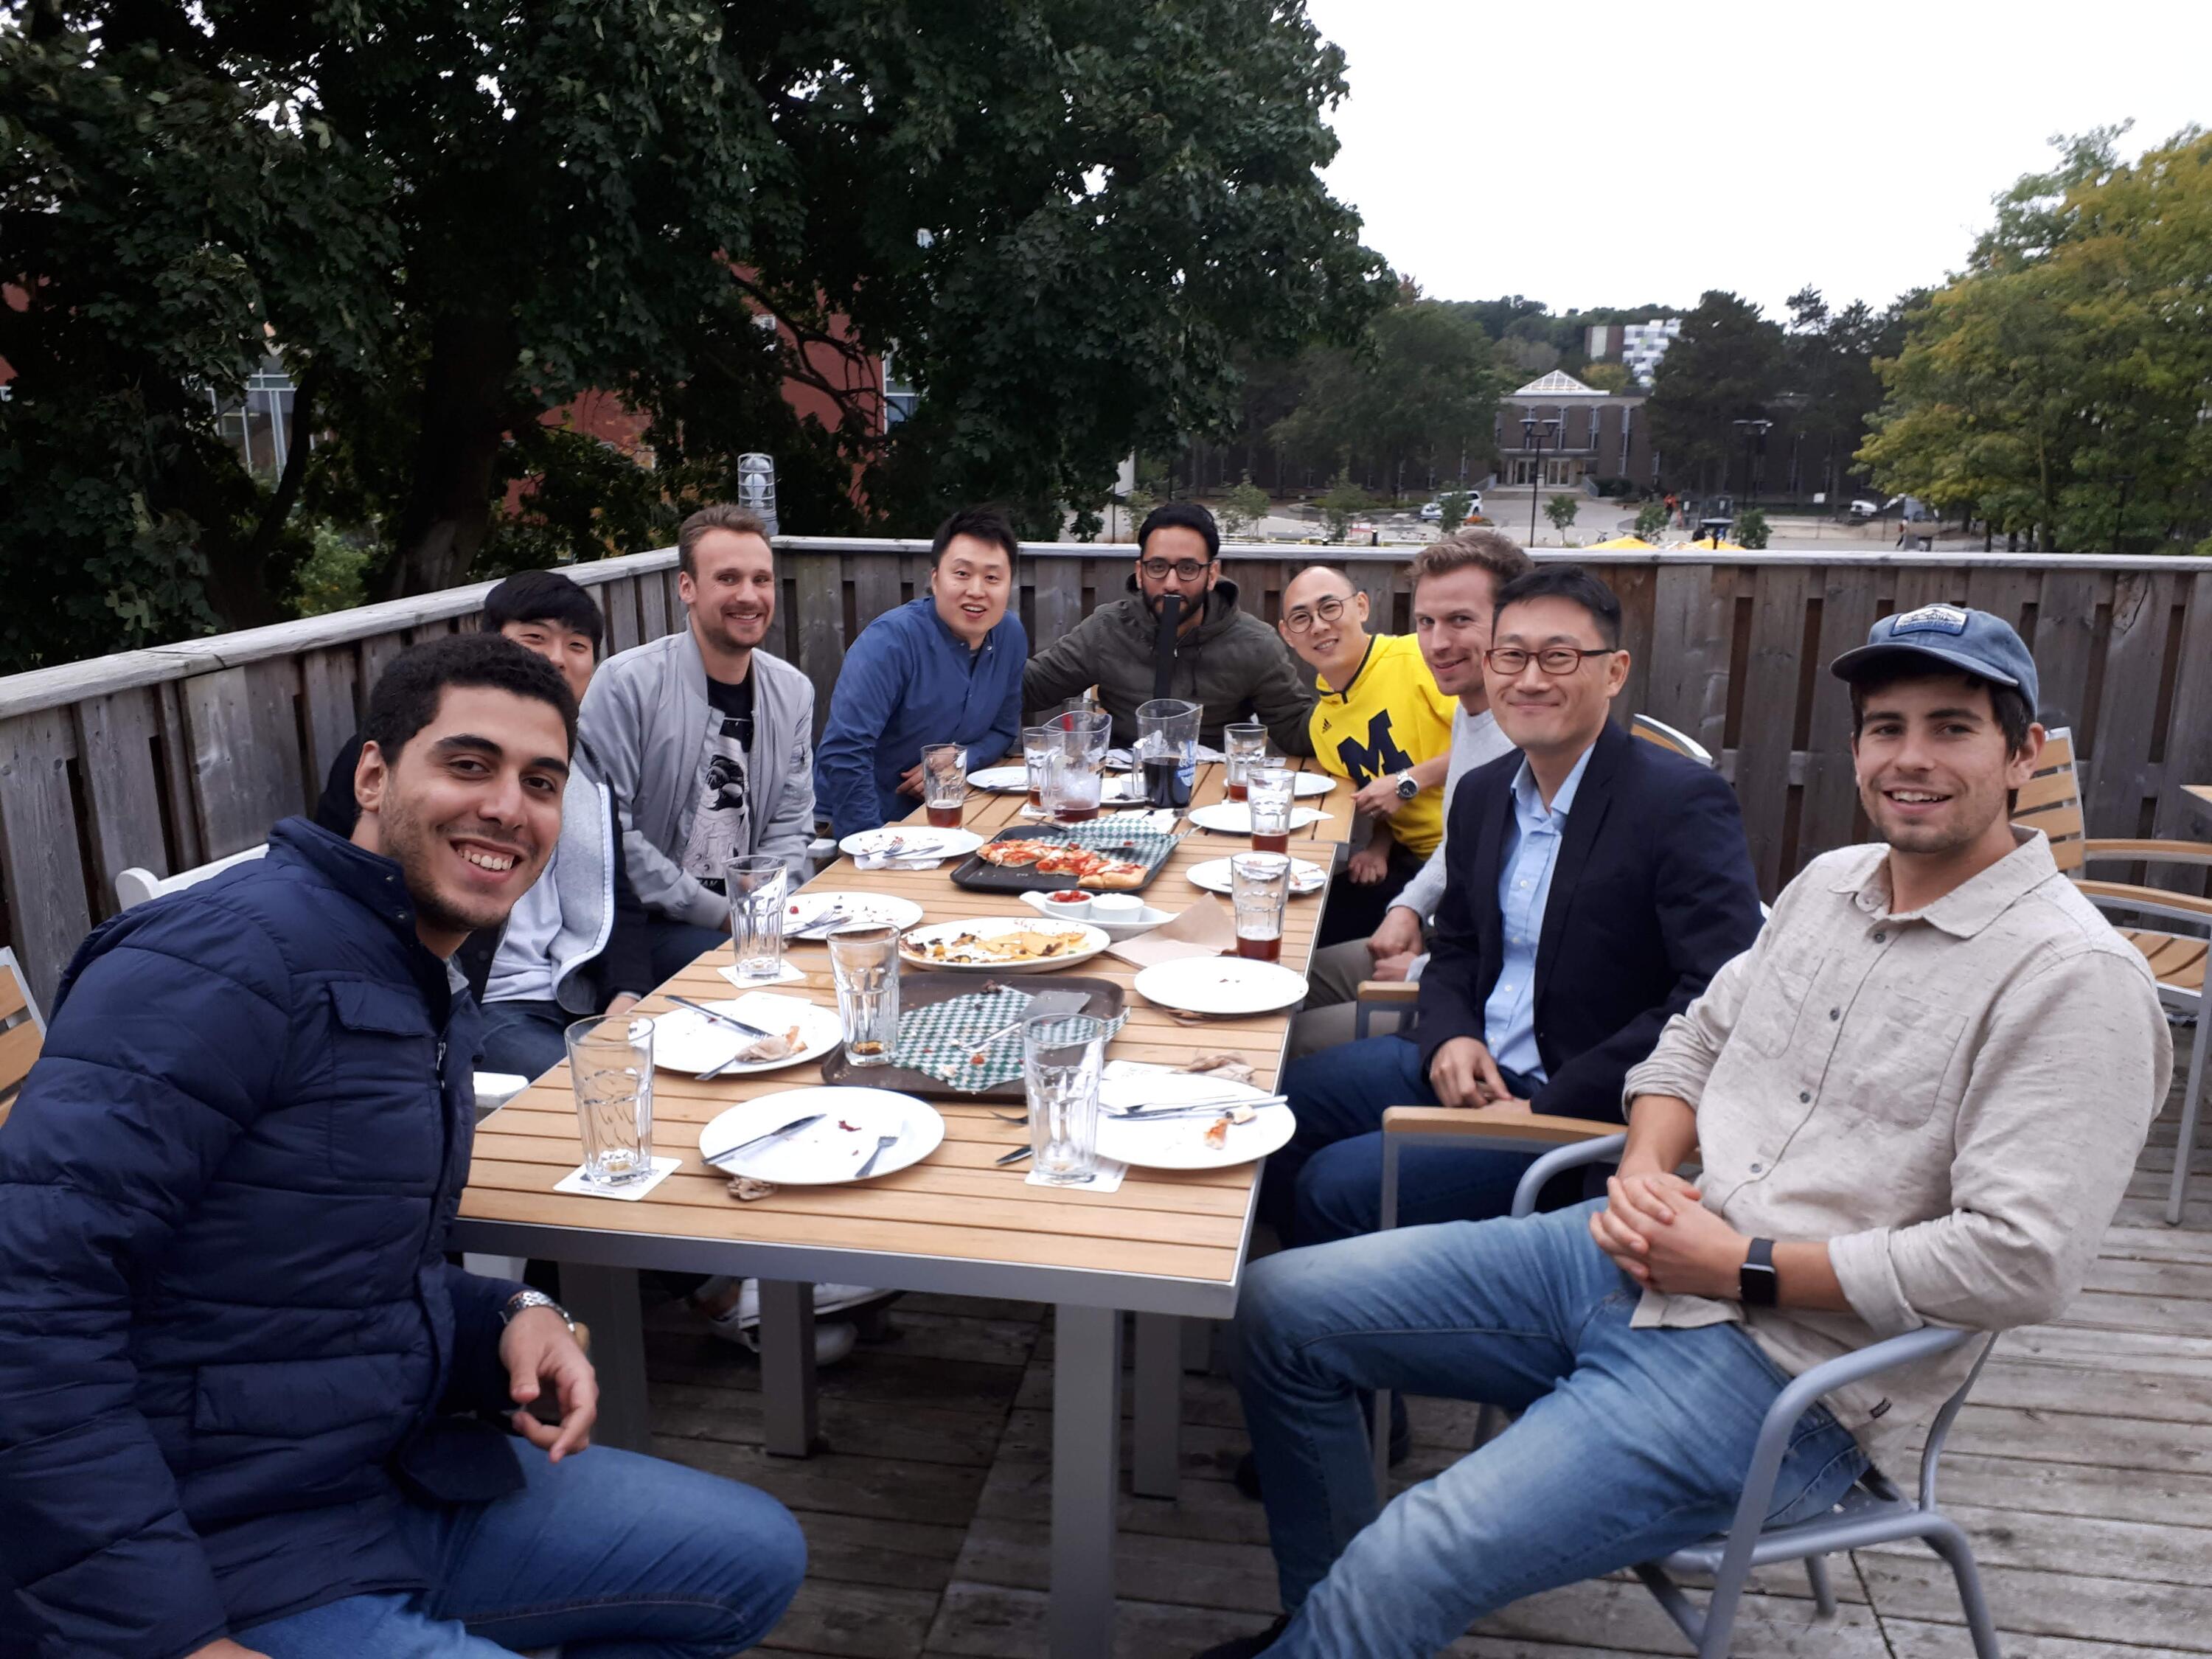 Group Dinner, October 2018